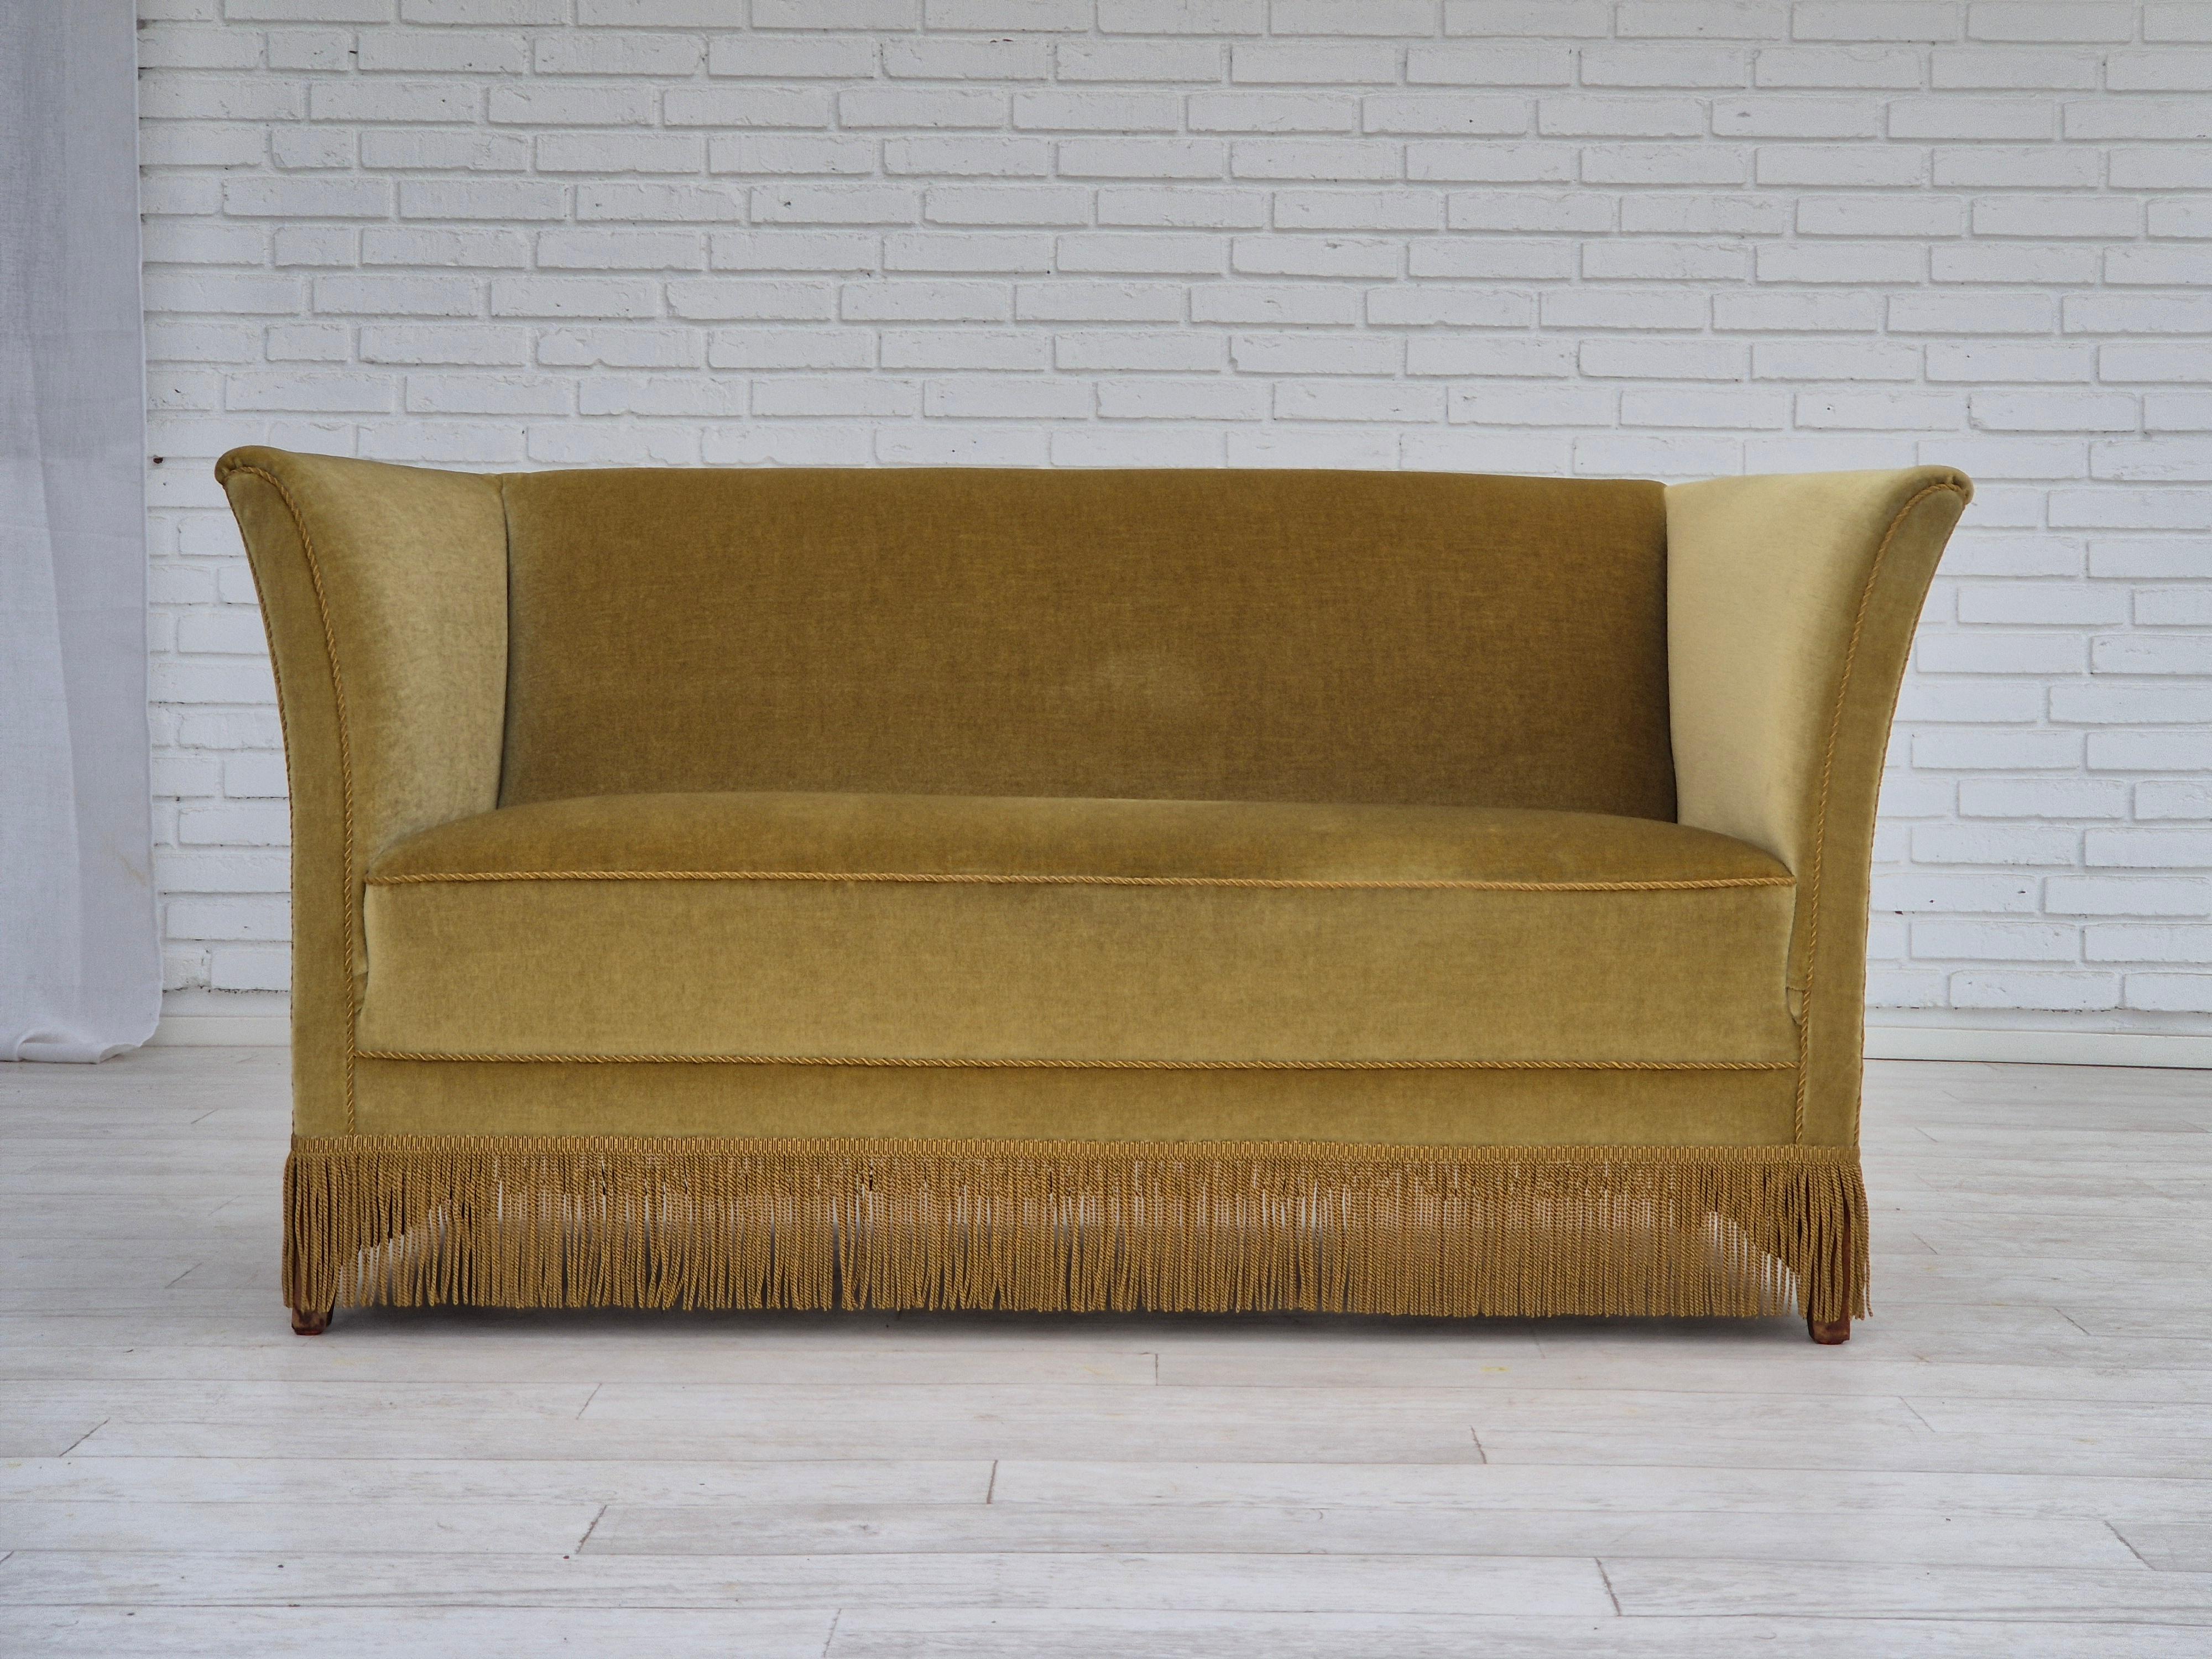 1970er, dänisches Design, 2-Sitzer-Sofa in sehr gutem Originalzustand: keine Gerüche und keine Flecken. Original hellgrüner Möbelvelours, Buchenholzbeine, Federn im Sitz. Hergestellt von einem dänischen Möbelhersteller in den Jahren um 1970.